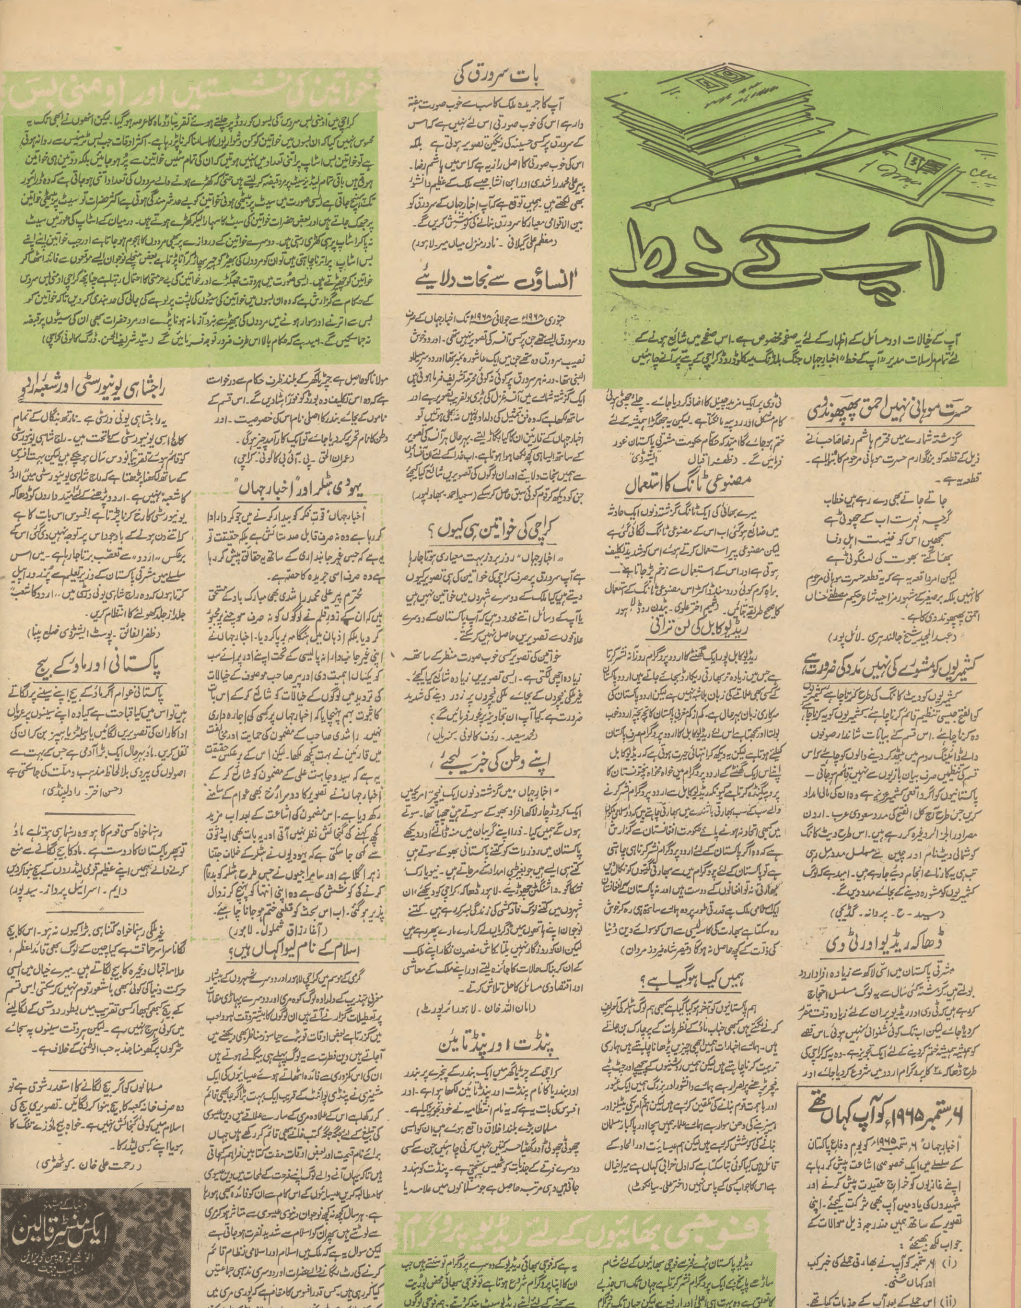 Akhbar-e-Jahan (Aug 28, 1968) - KHAJISTAN™